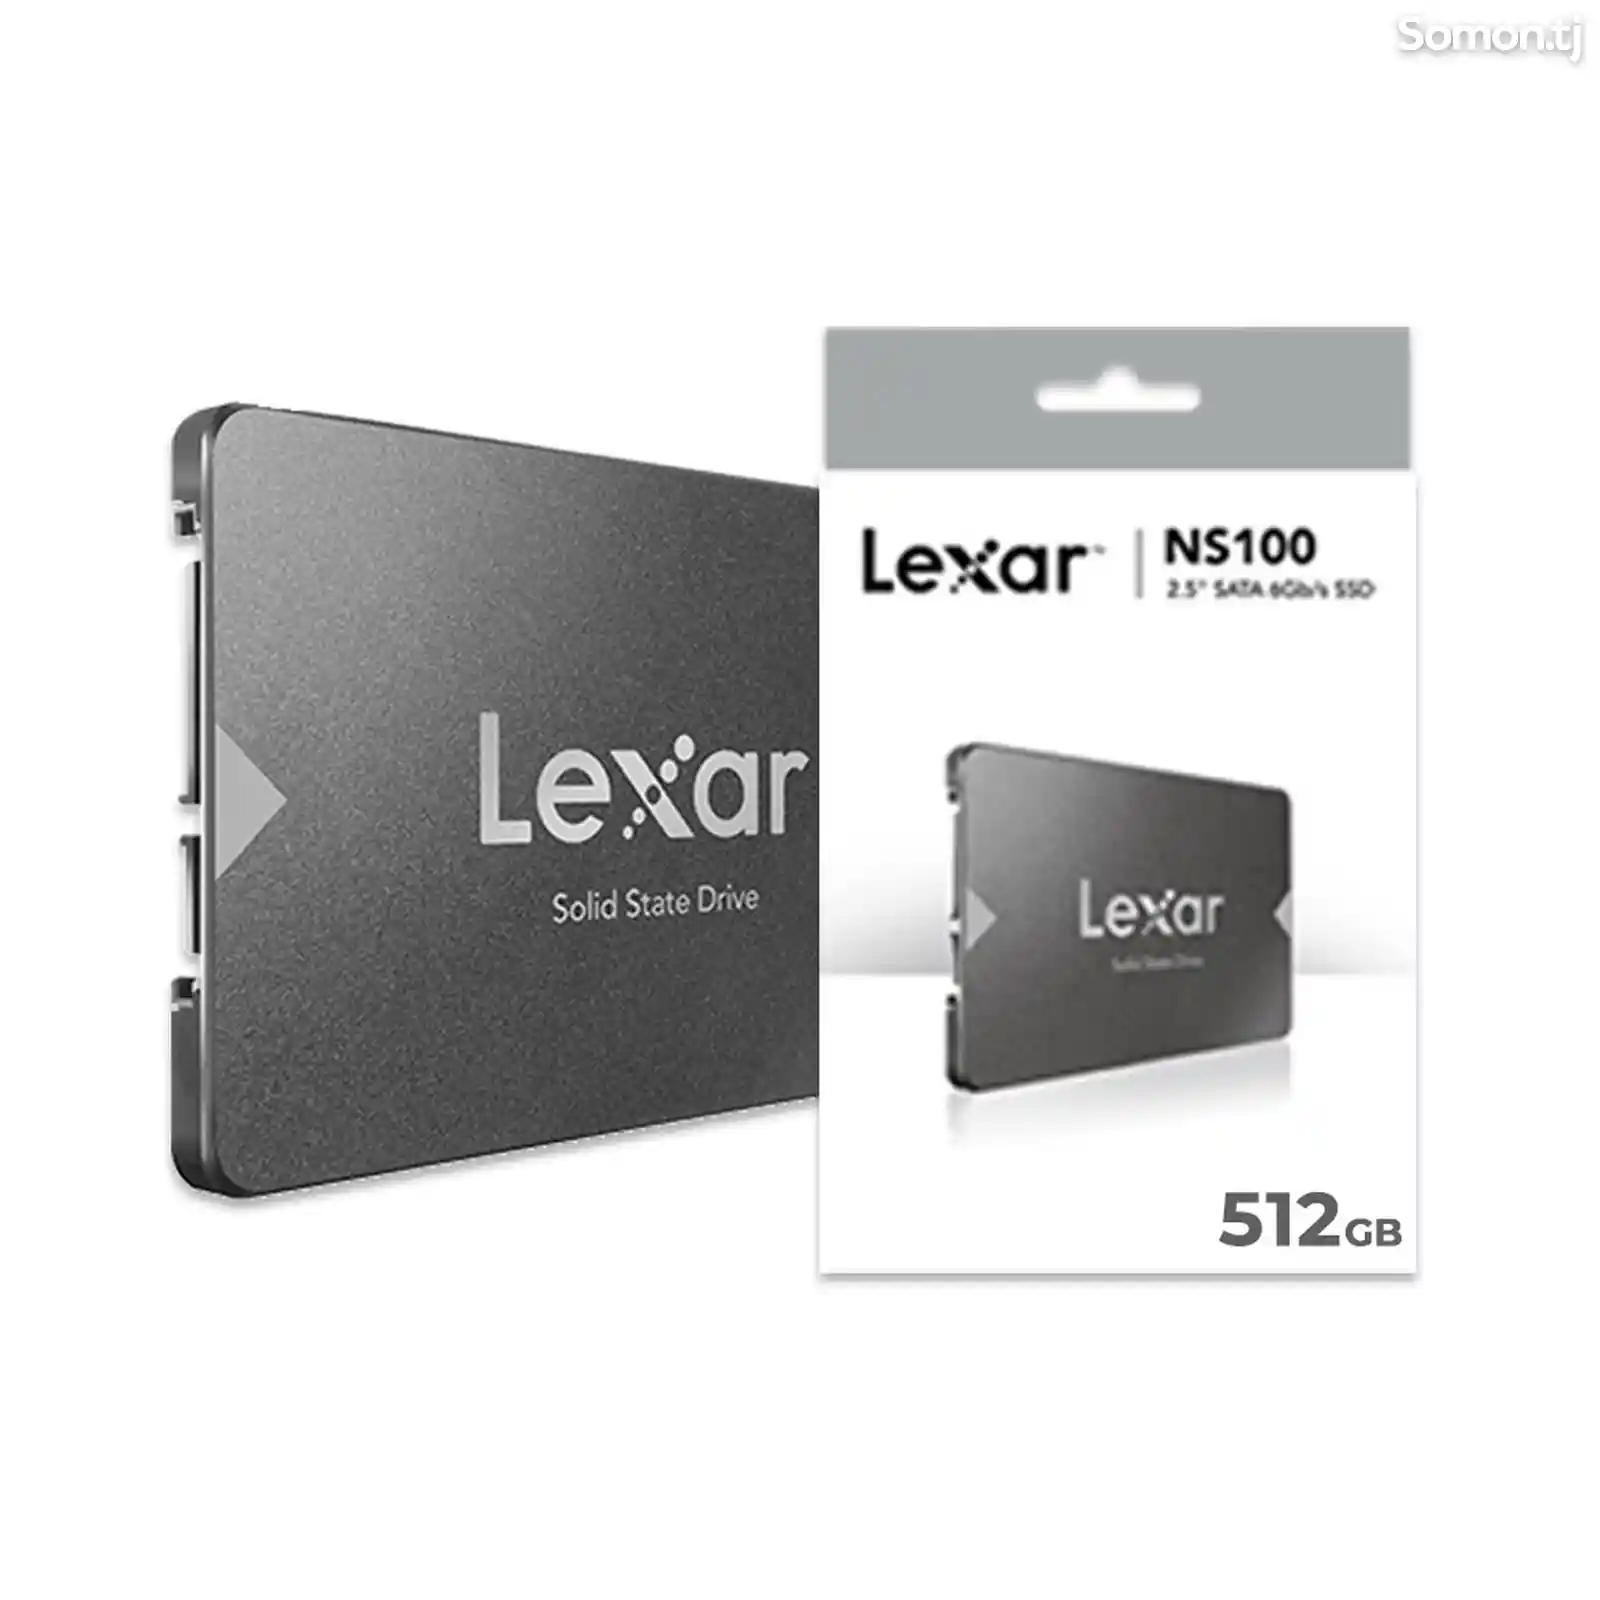 Внутренний SSD накопитель Lexar NS100, 512gb-2